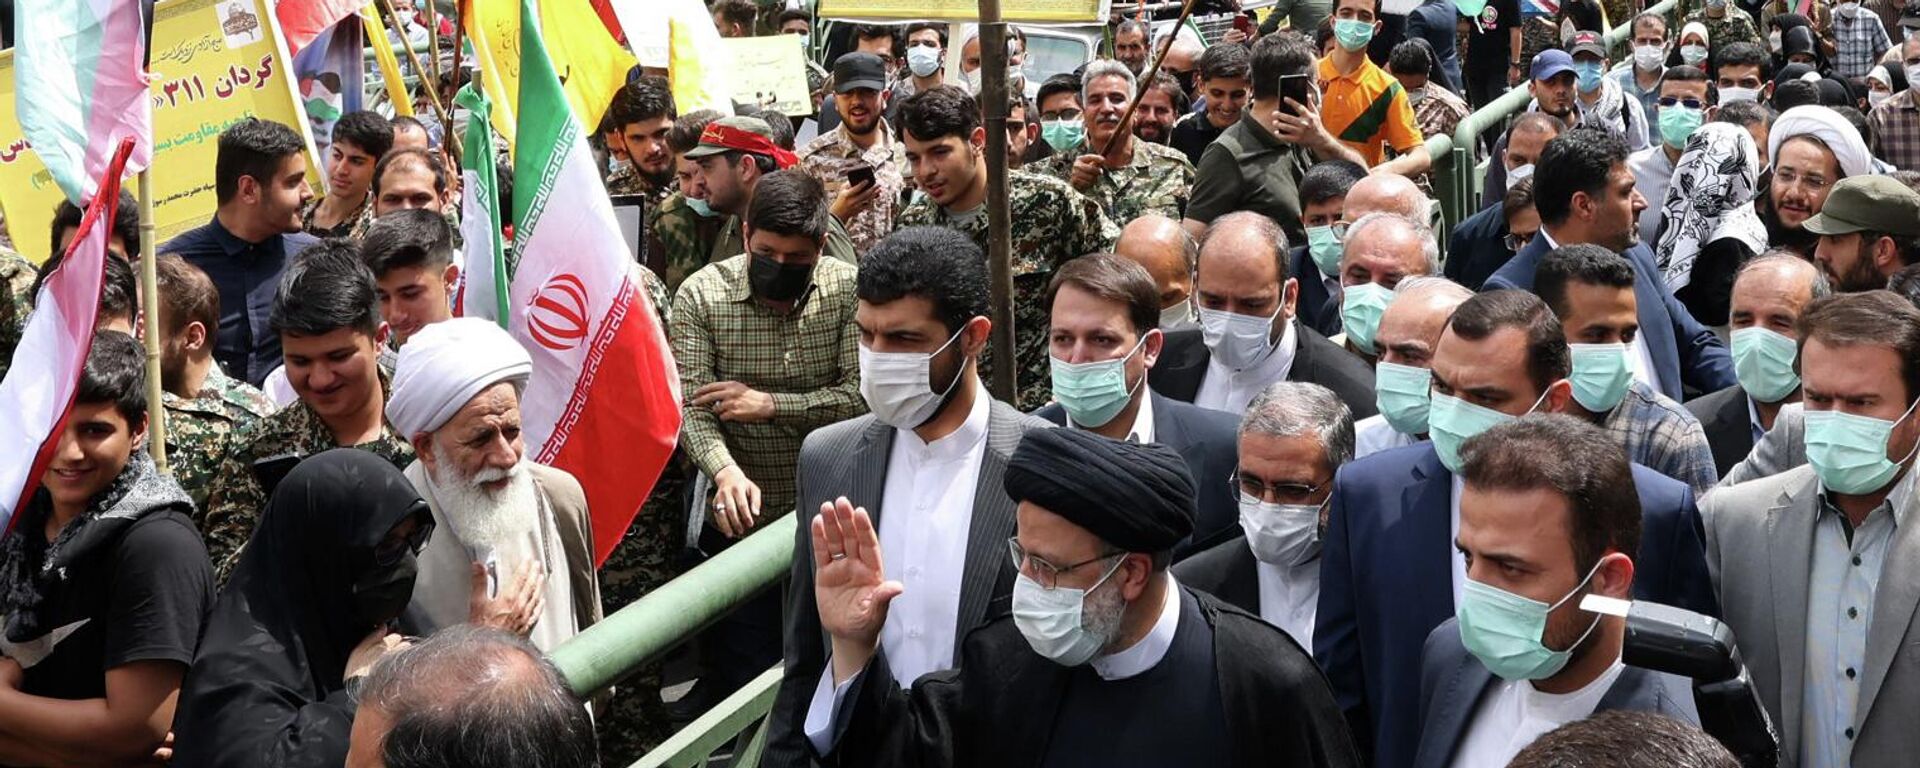 Presidente iraniano Ebrahim Raisi participando de um comício que marca o dia de al-Quds (Jerusalém) em Teerã em 29 de abril de 2022 - Sputnik Brasil, 1920, 29.04.2022